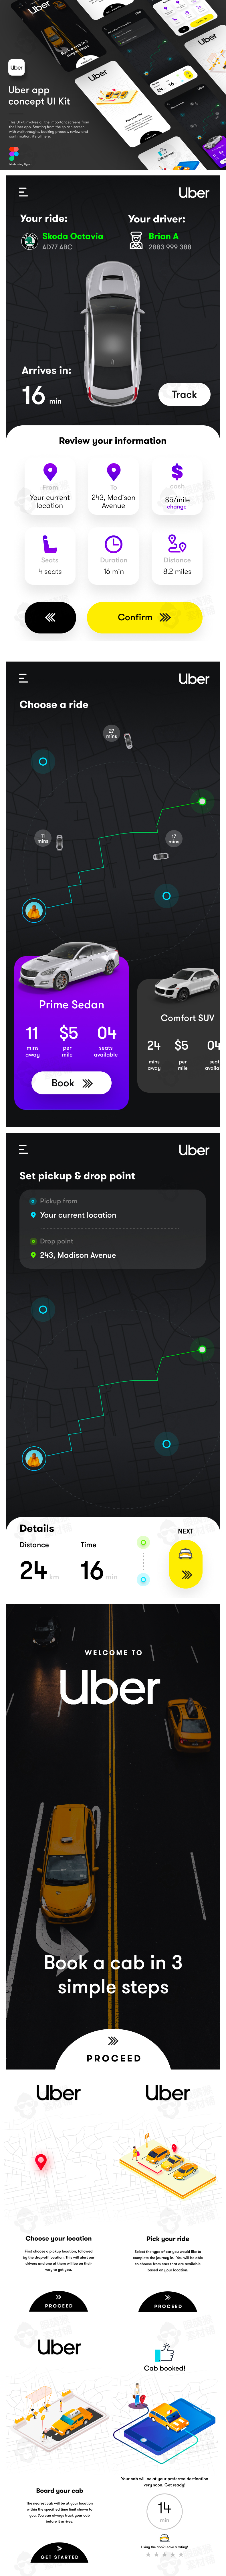 扁平共享预约uber租车快车智能交通工具手机应用APP界面设计素材-UI/UX-到位啦UI